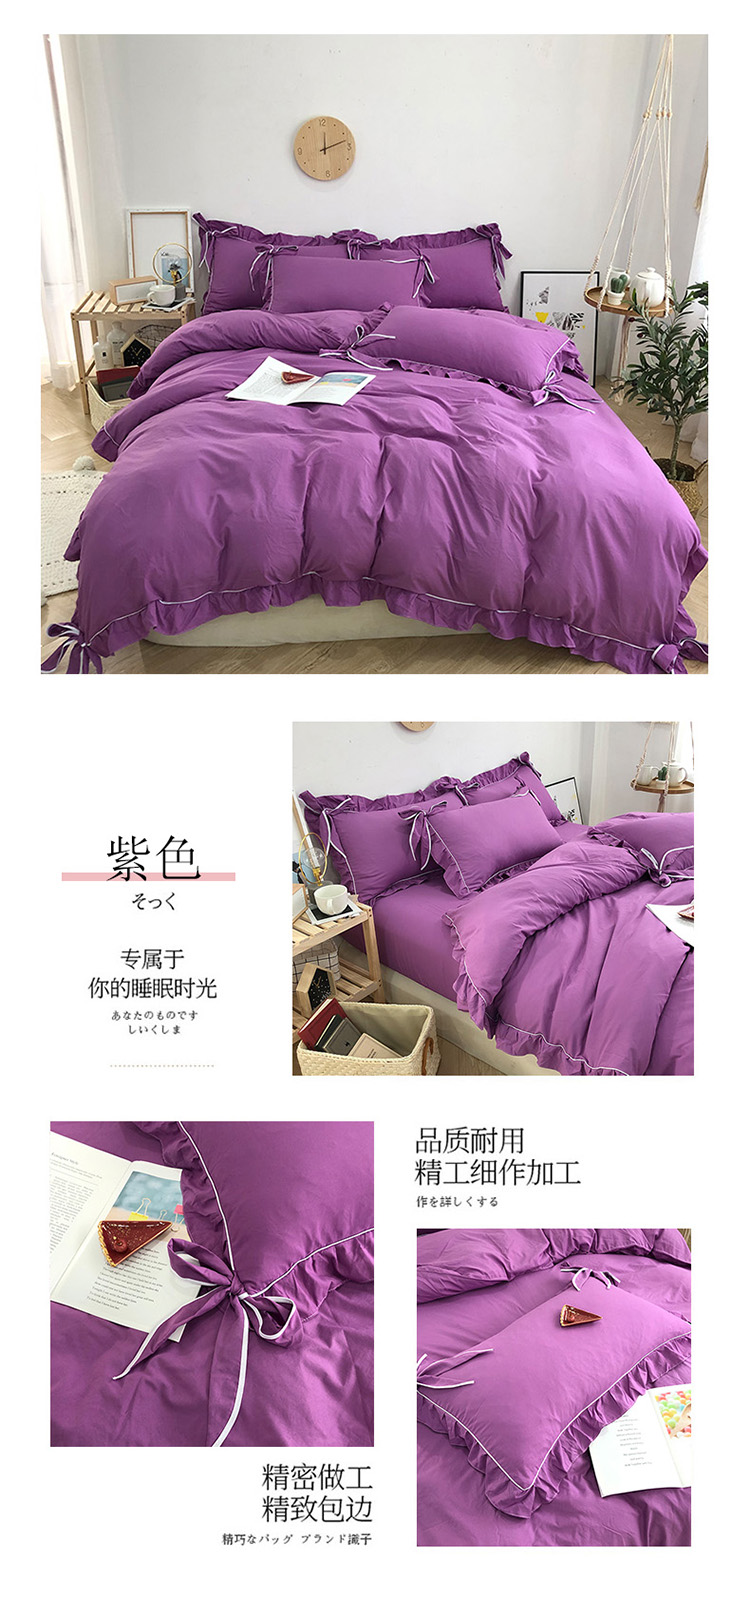 分类_紫色.jpg